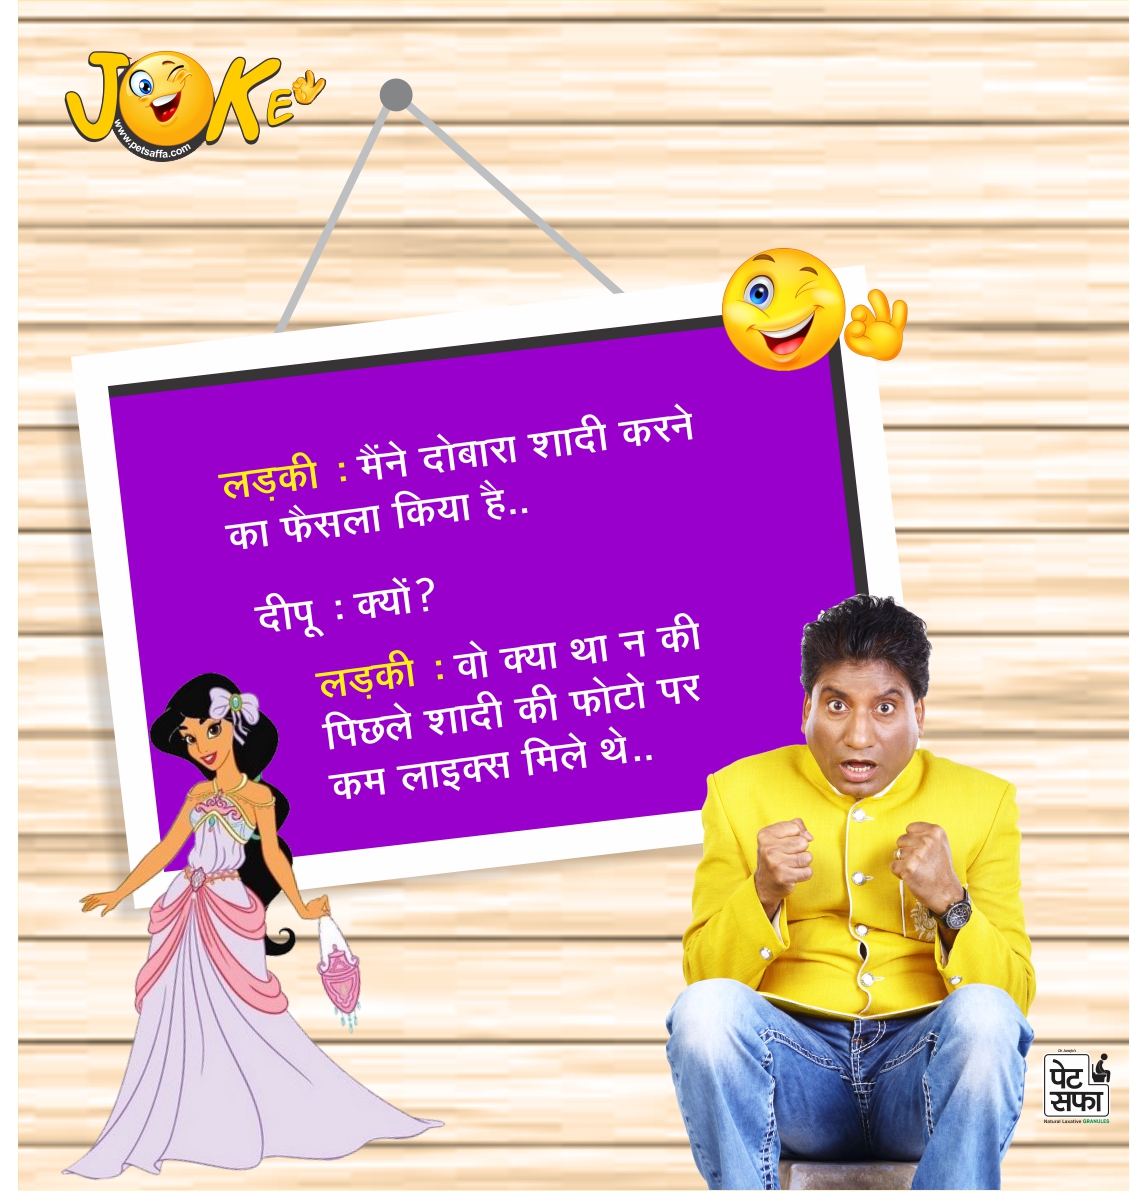 Funny Jokes In Hindi-Hindi Funny Jokes-Best Jokes In Hindi-Latest Hindi Jokes 2017-Rajushrivastav Jokes-Petsaffa Jokes-Hindi Jokes Wallpapers-Hindi Chutkule-Yakkuu (6)